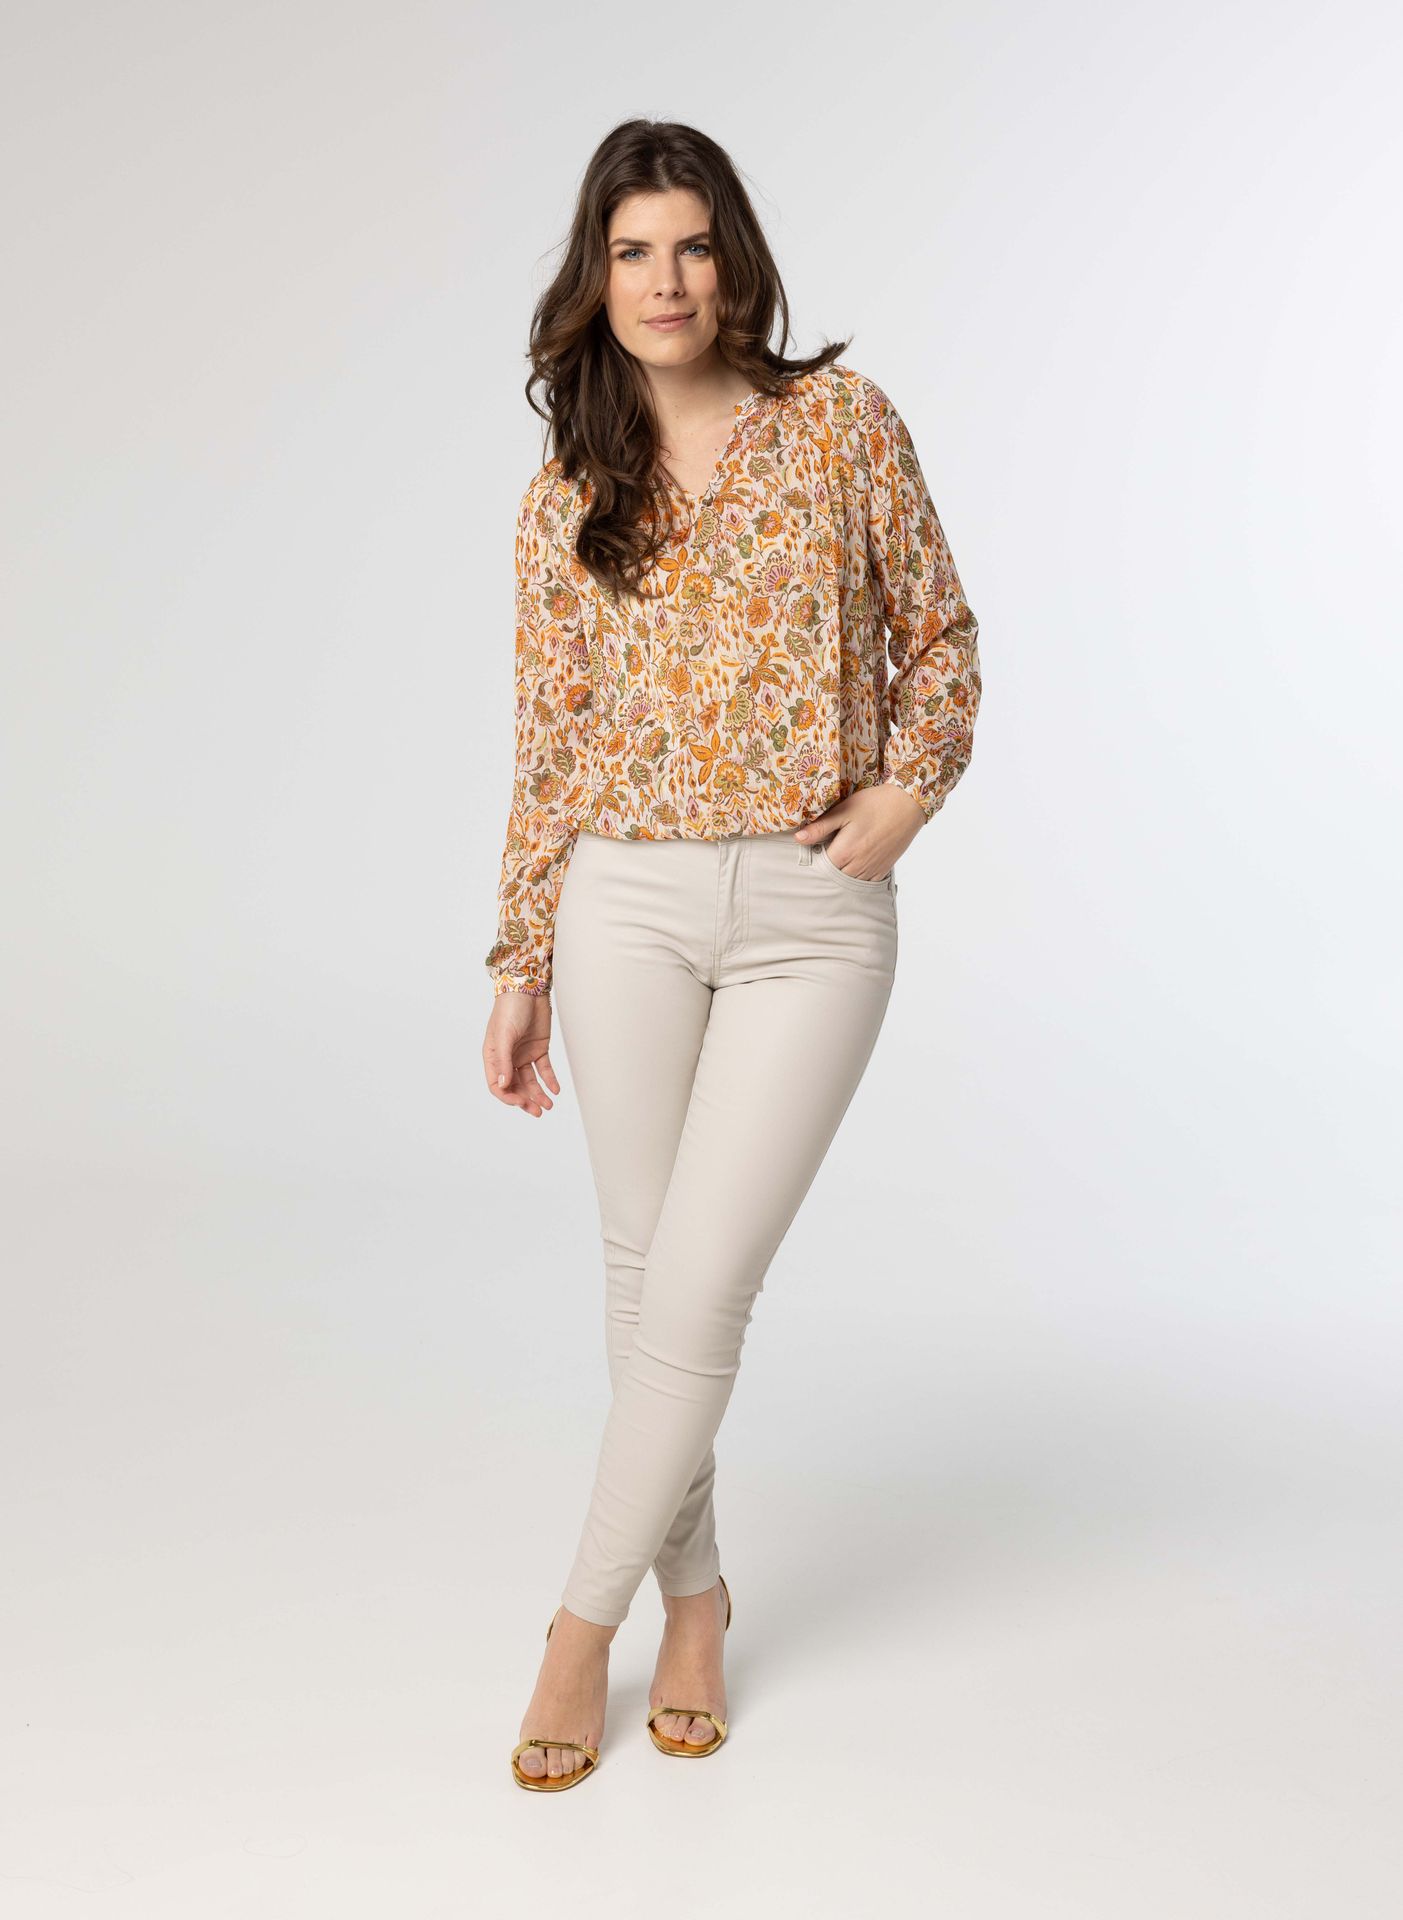 Norah Meerkleurige blouse met glitter ecru multicolor 214168-122